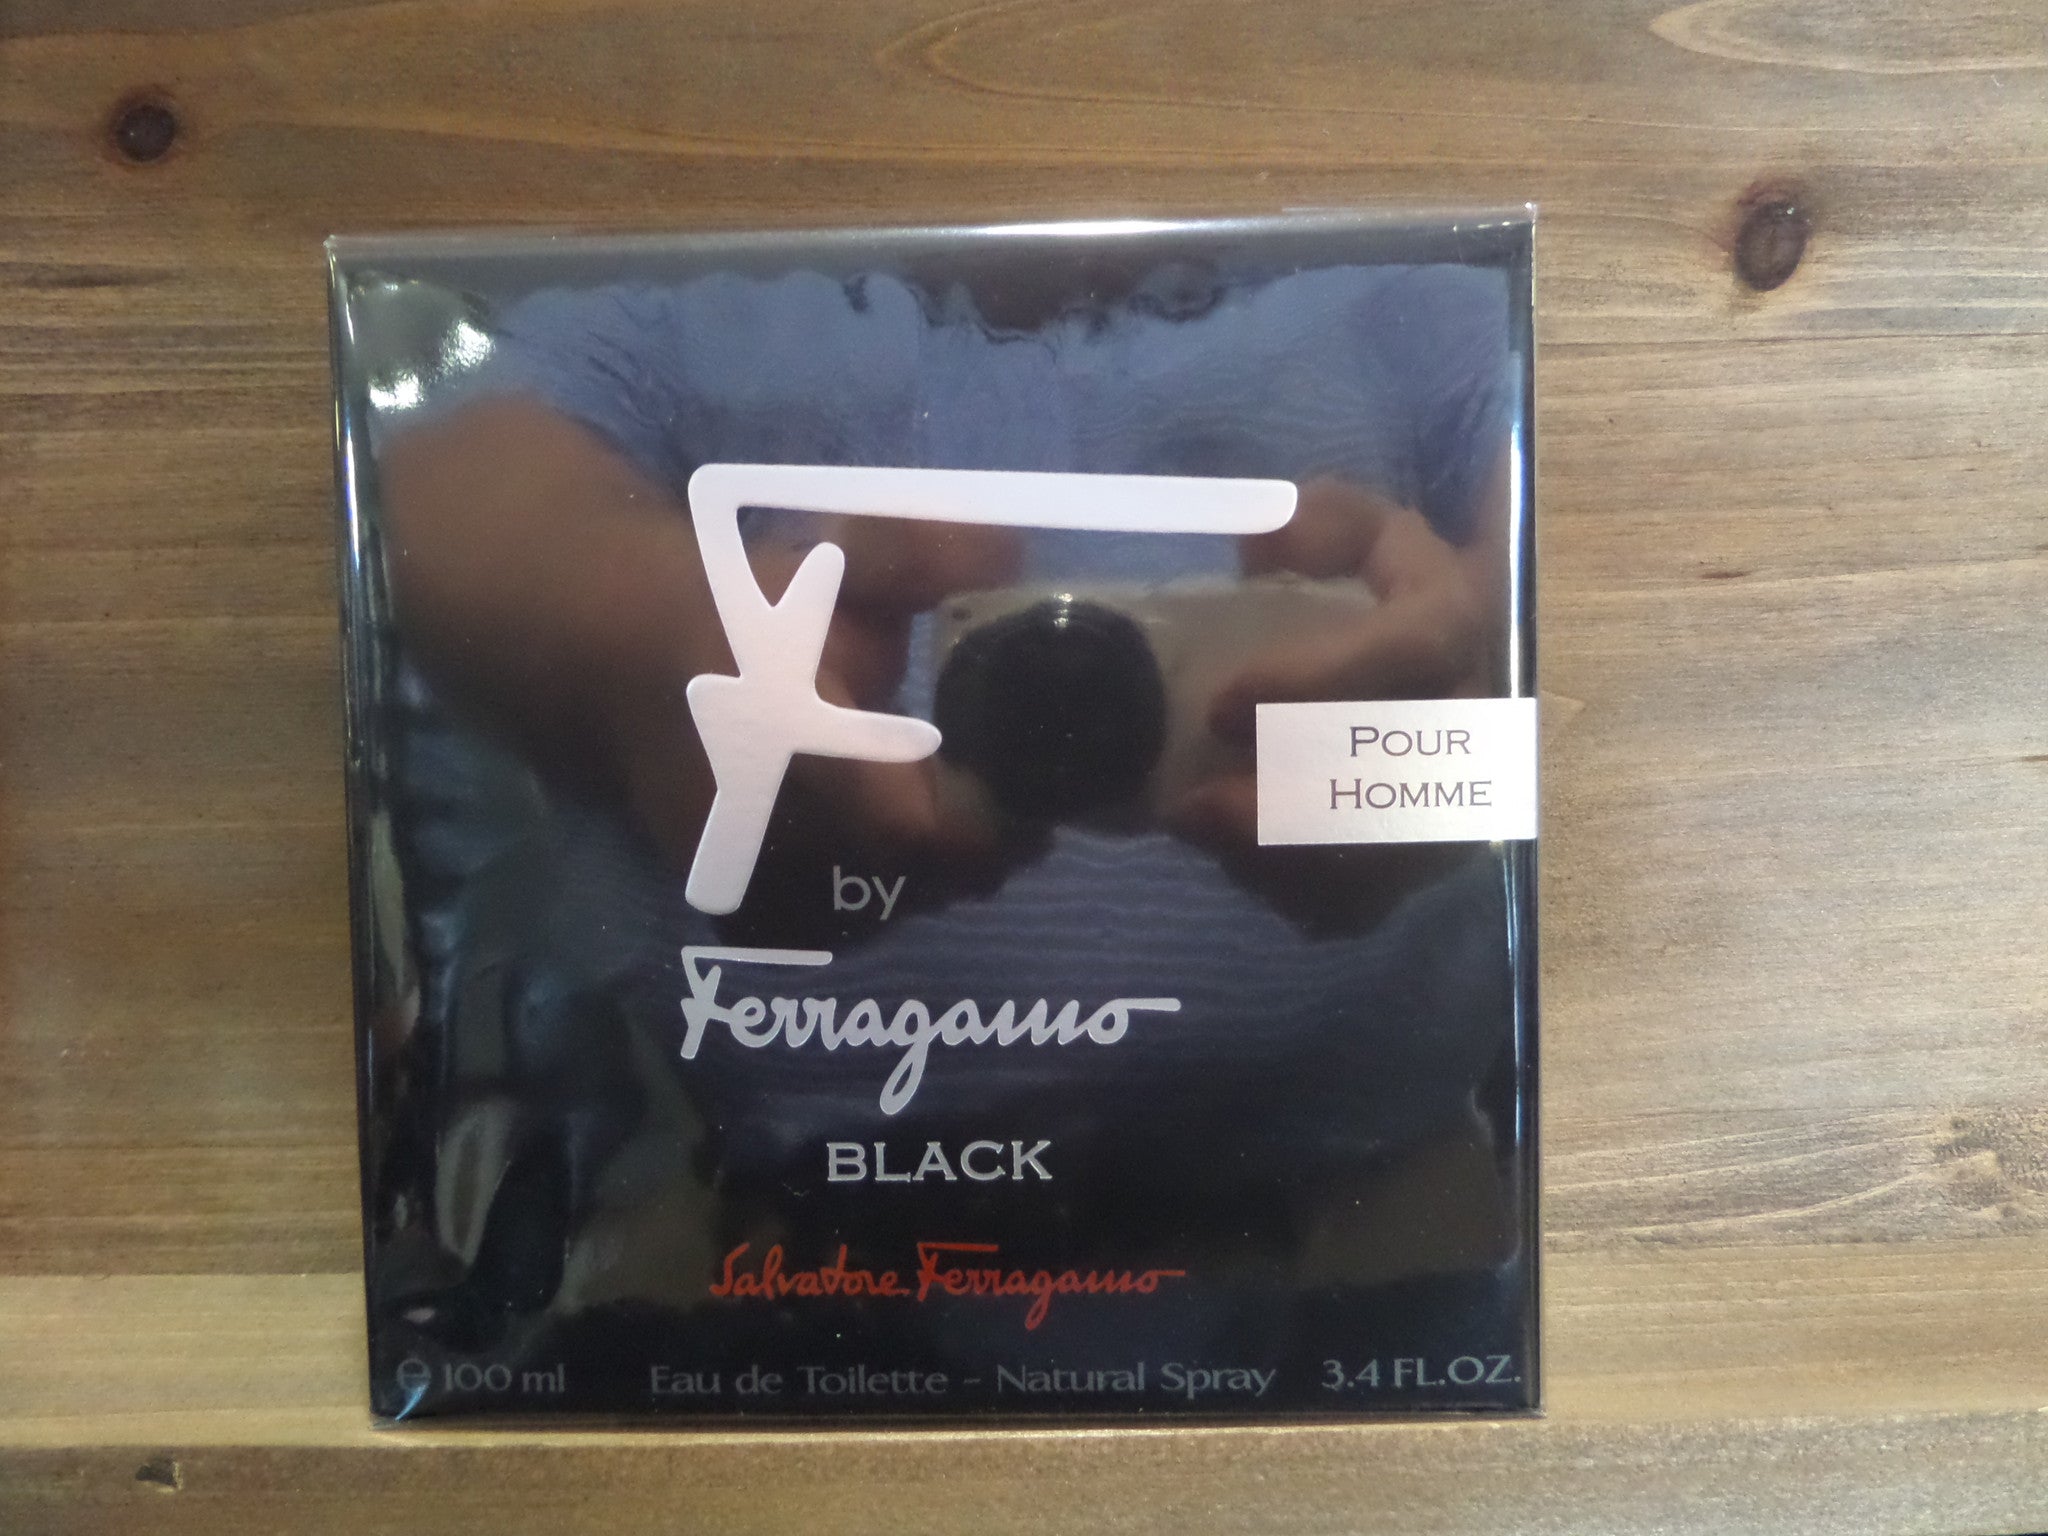 Ferragamo Black F by Salvatore Ferragamo for men Cologne